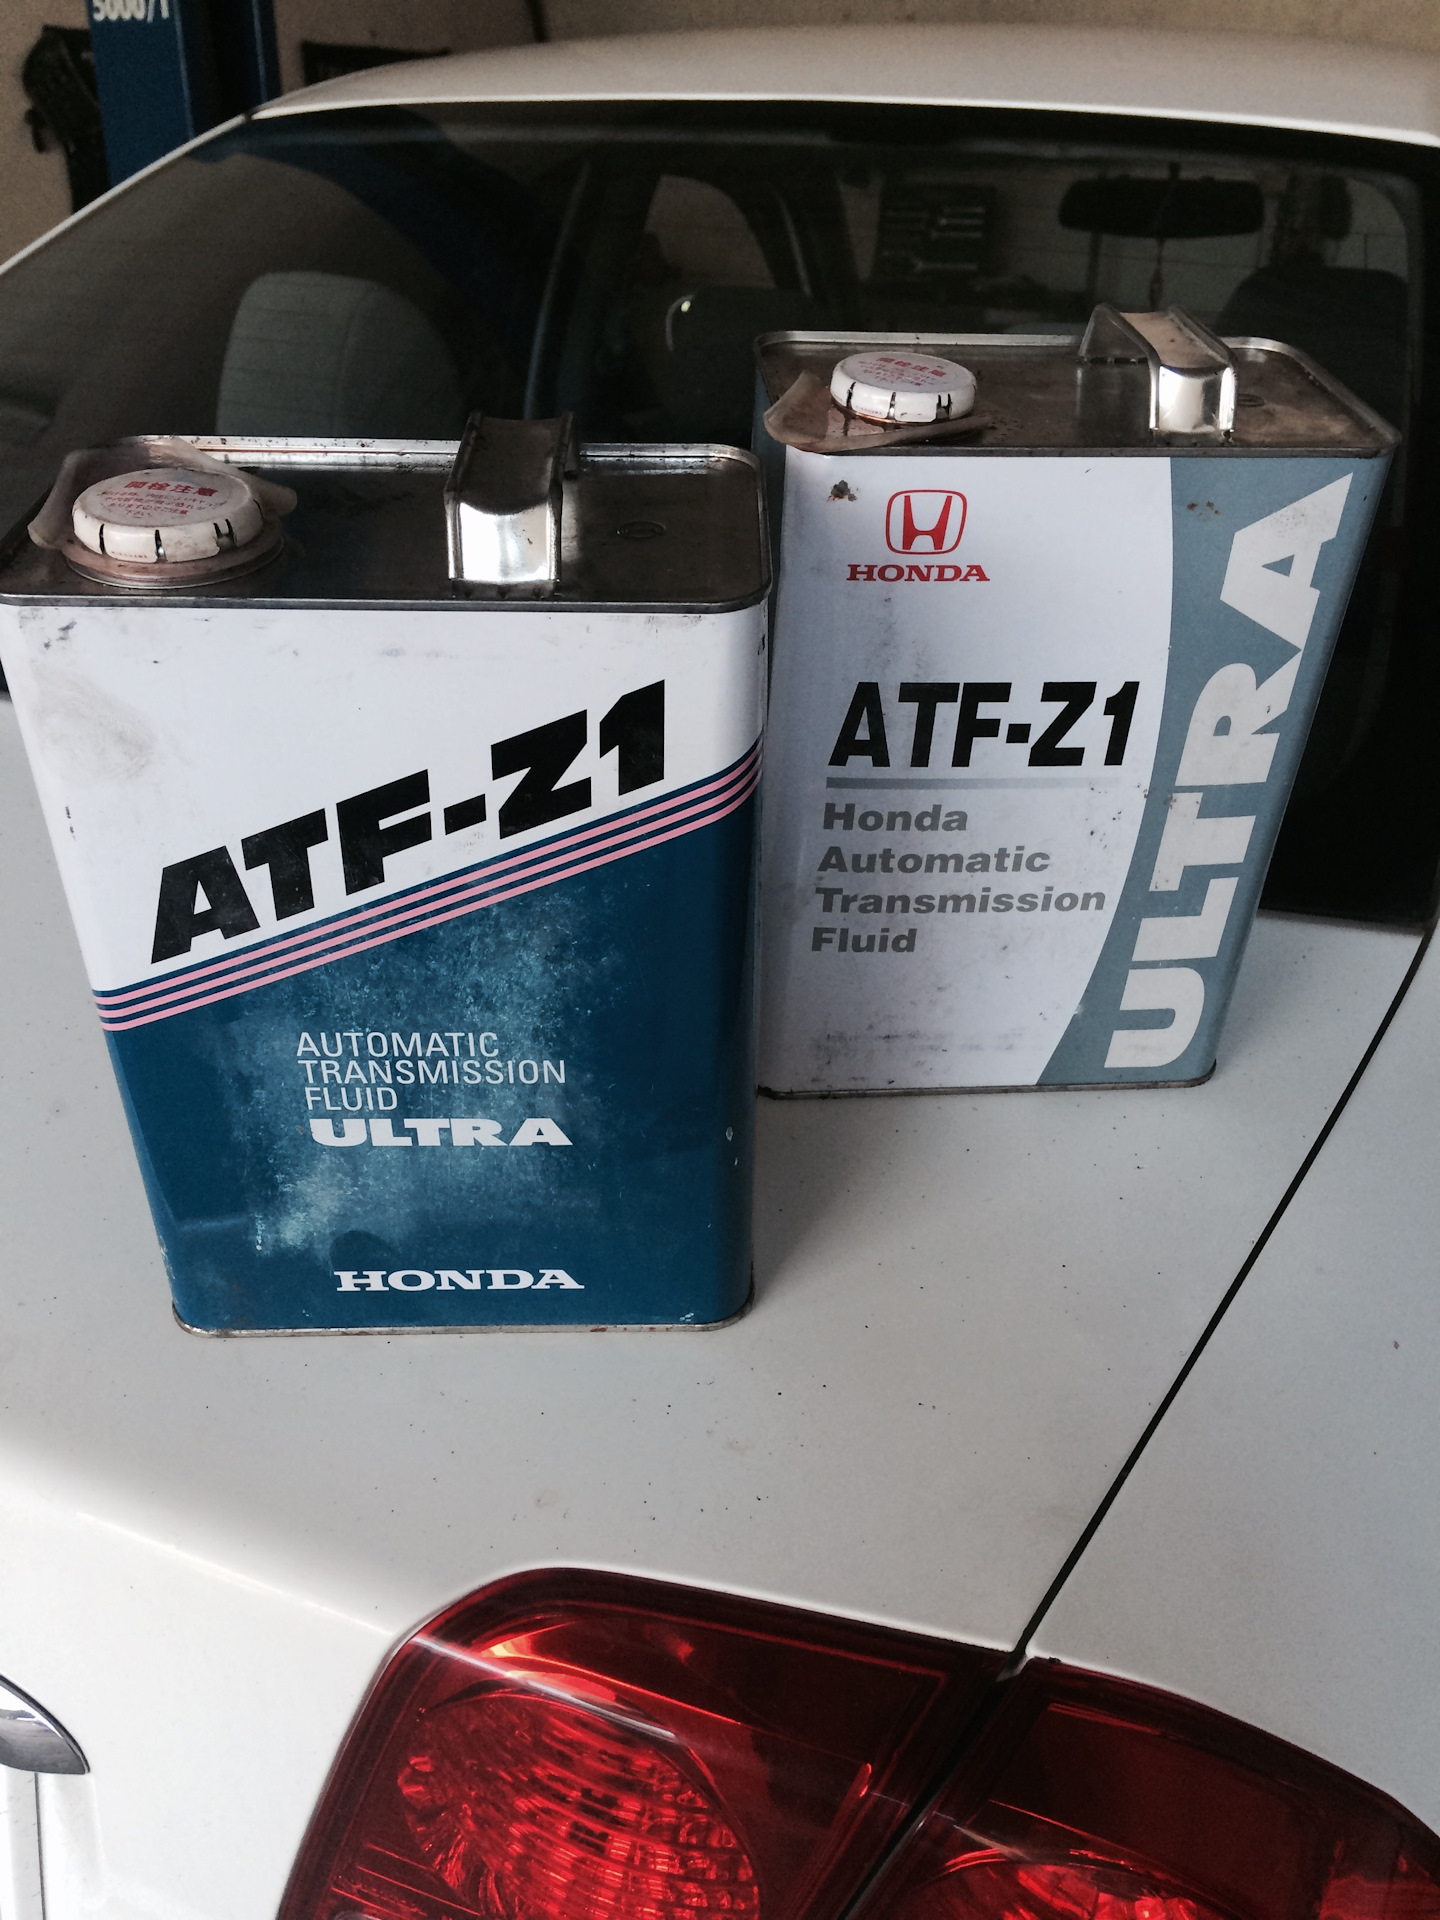 Atf z. Idemitsu ATF z1. Honda ATF Z-1. Idemitsu Honda ATF z1. ATF z1 аналоги идемитсу.